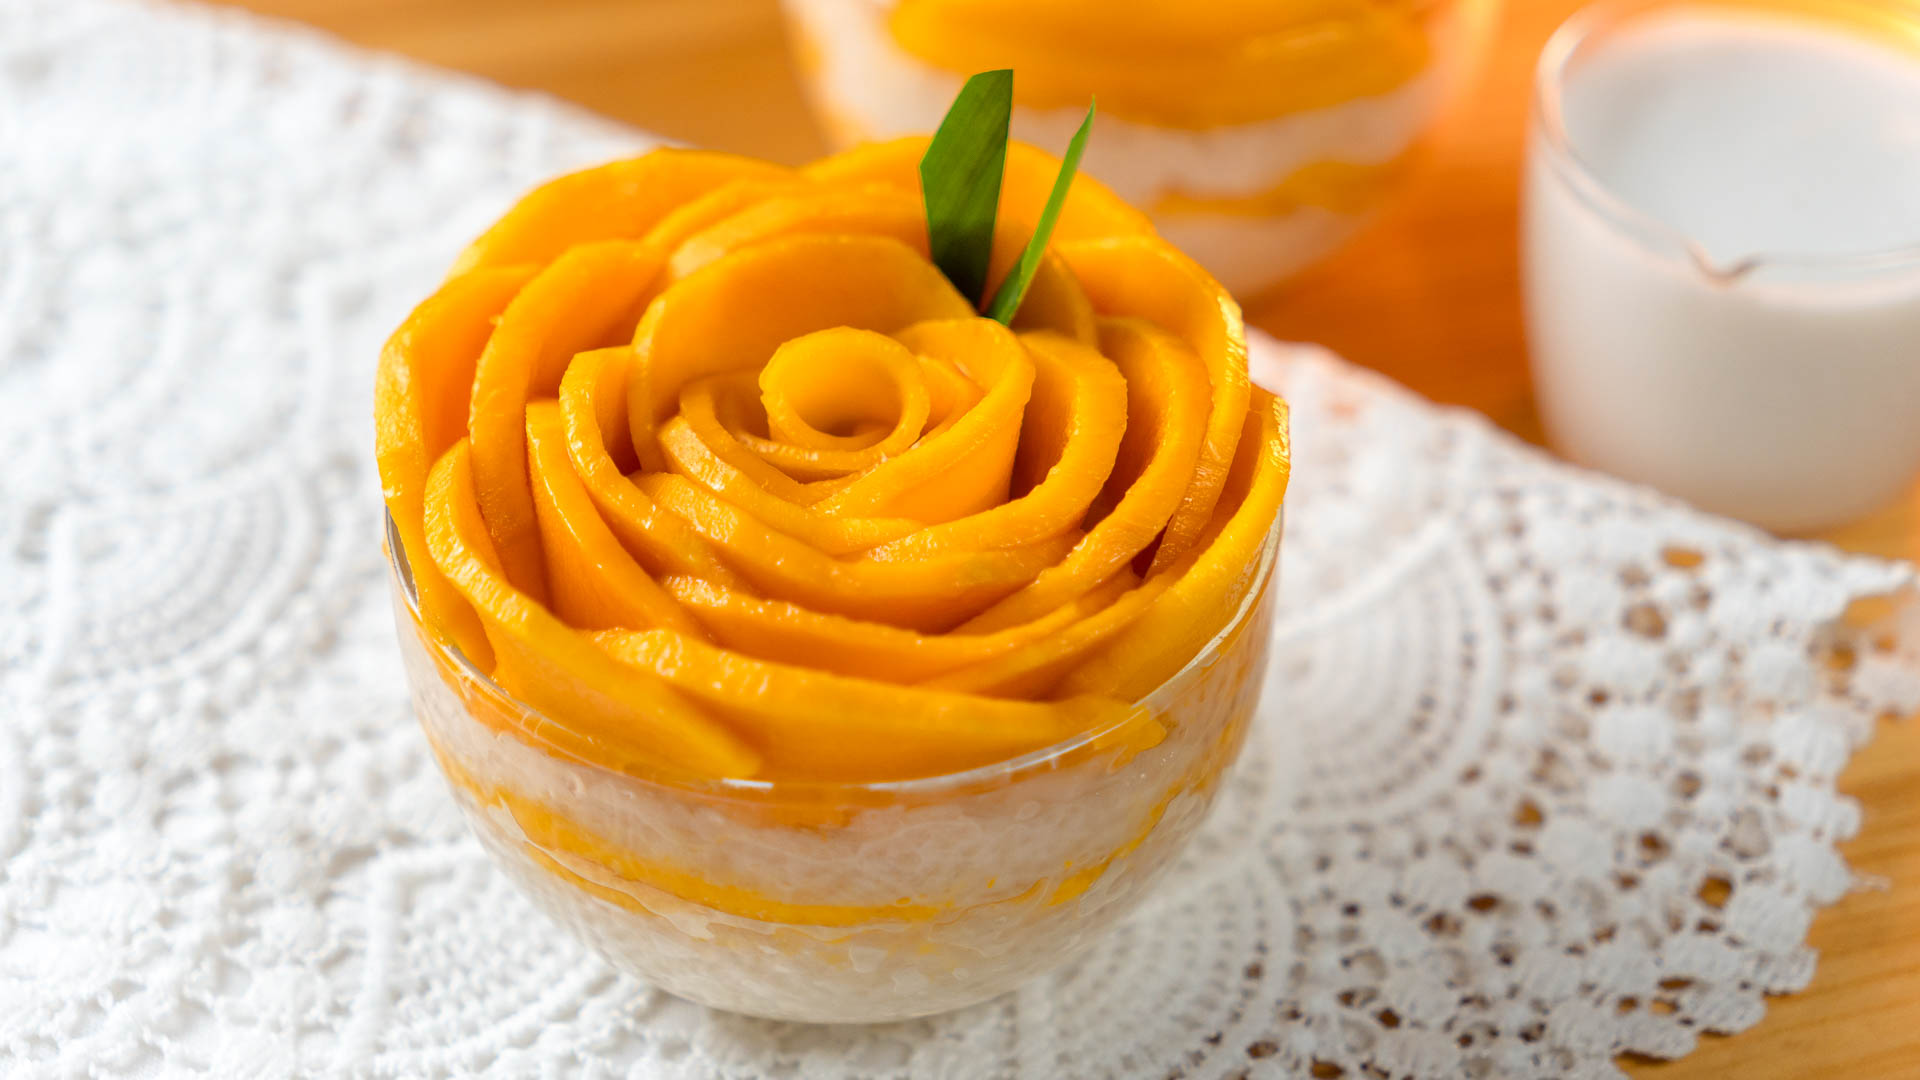 Mango Rose Cake Recipe | By NehasBakery - YouTube